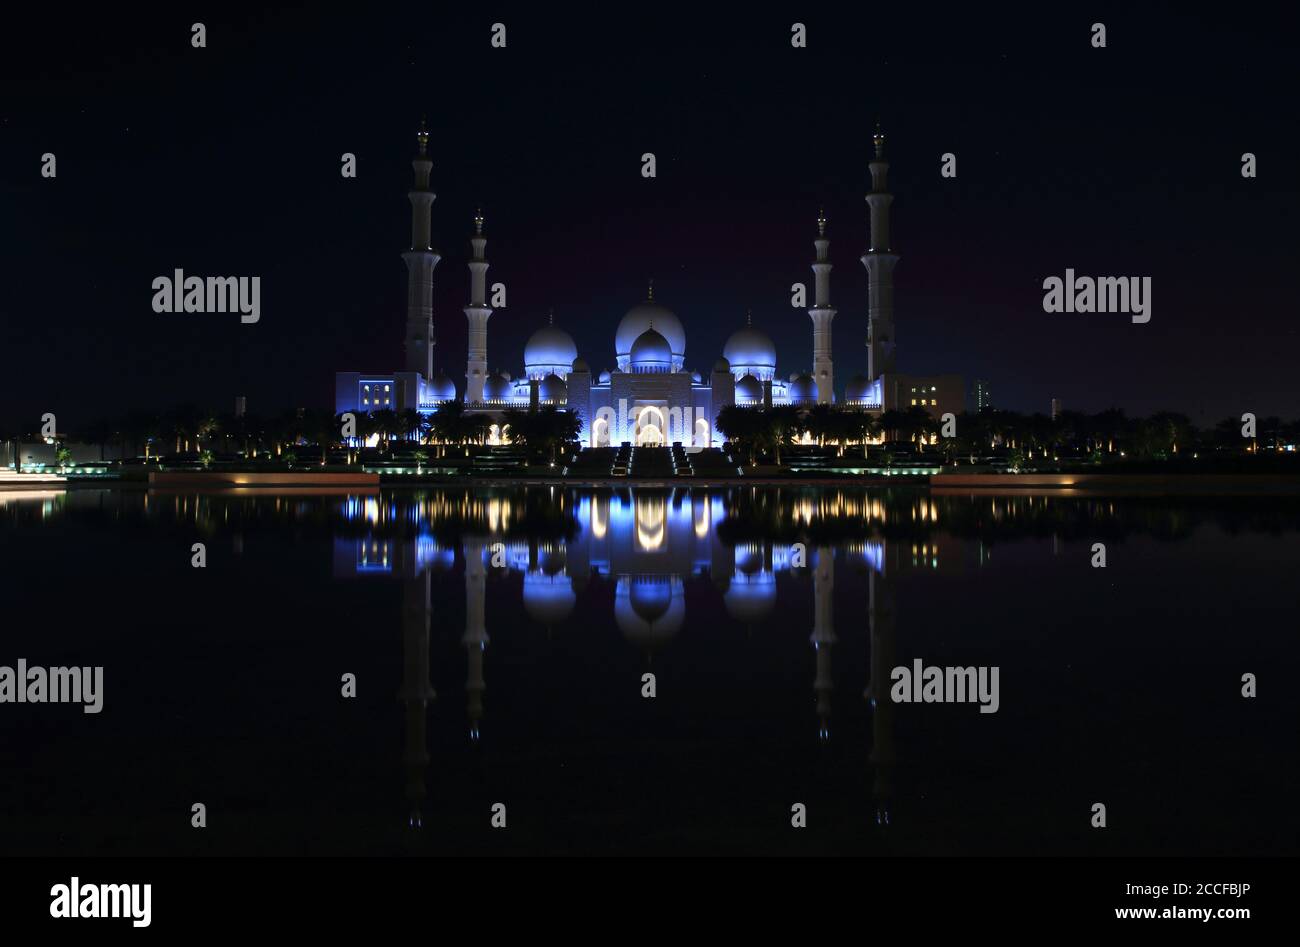 Sheikh Zayed Grand Mosque / Sheikh Zayed Grand Mosque in Abu Dhabi, UAE Stock Photo